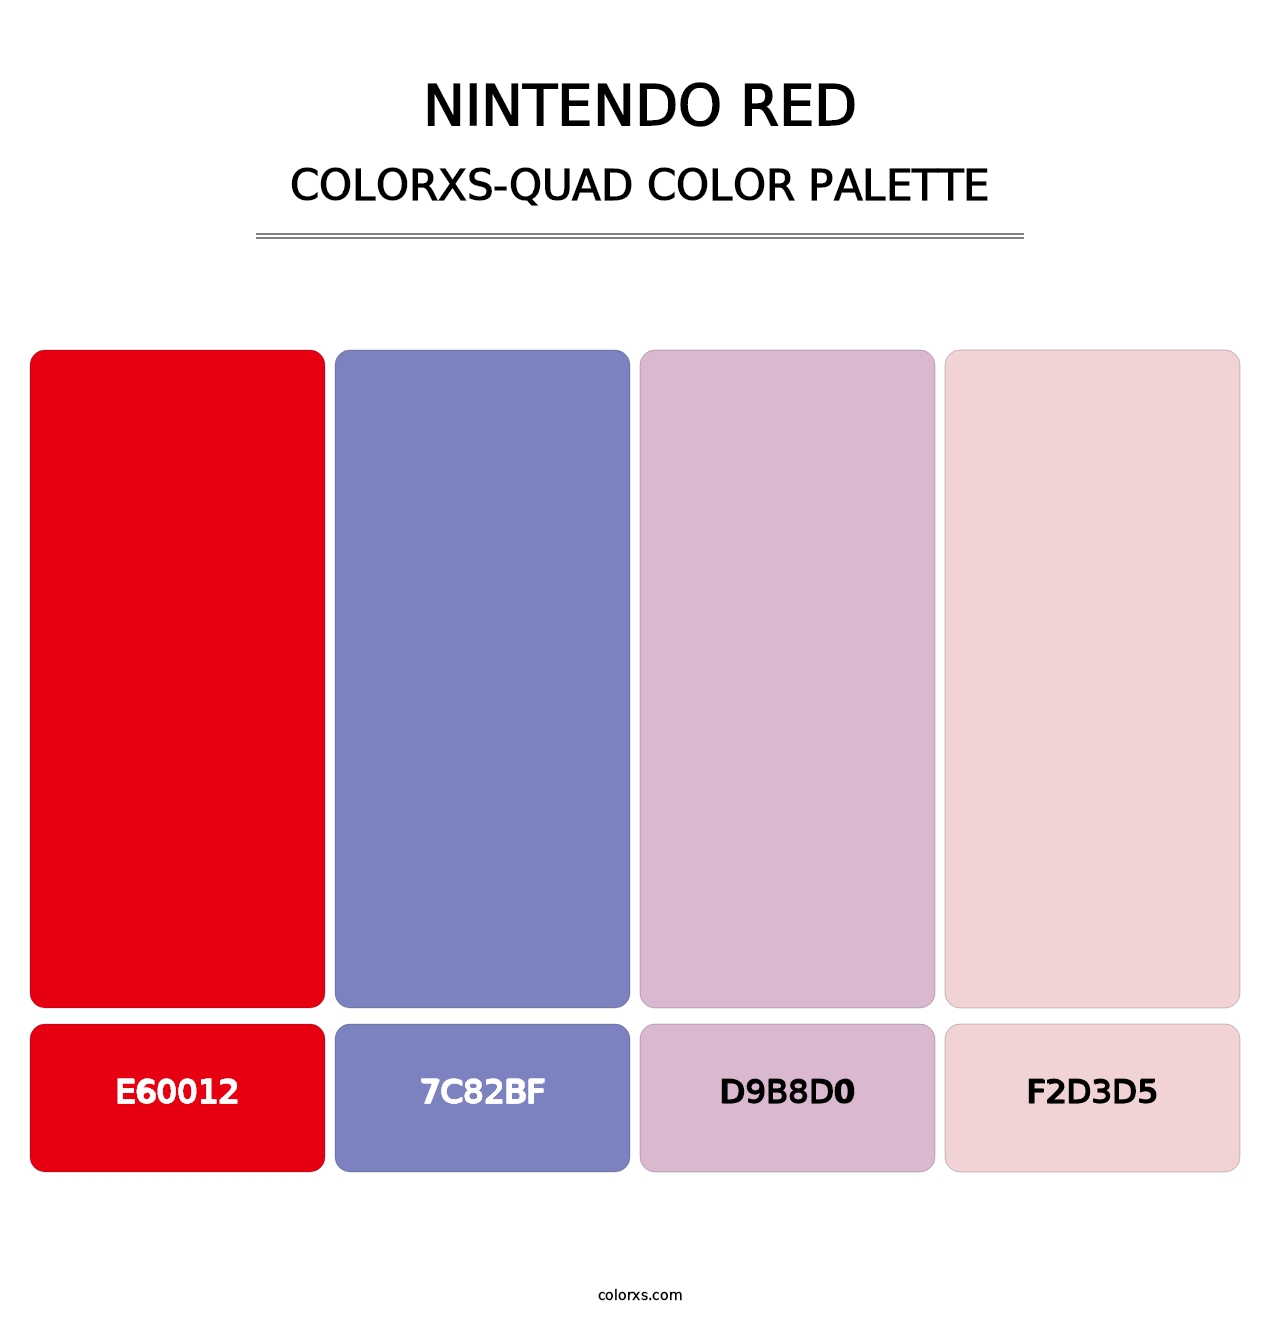 Nintendo Red - Colorxs Quad Palette